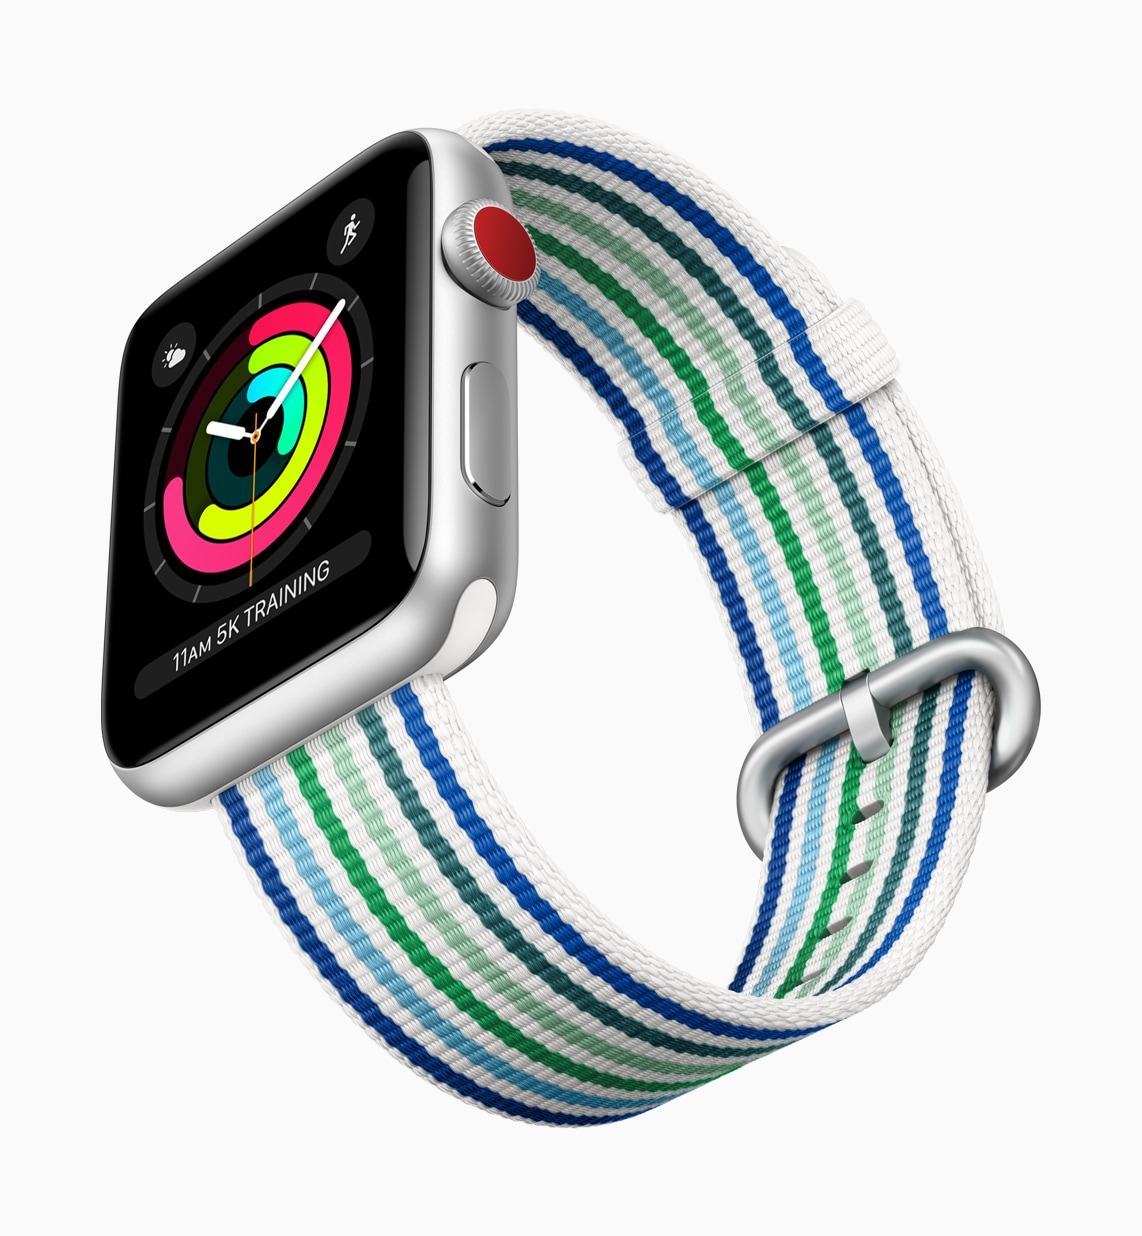 Nova cor/estilo de pulseira pro Apple Watch